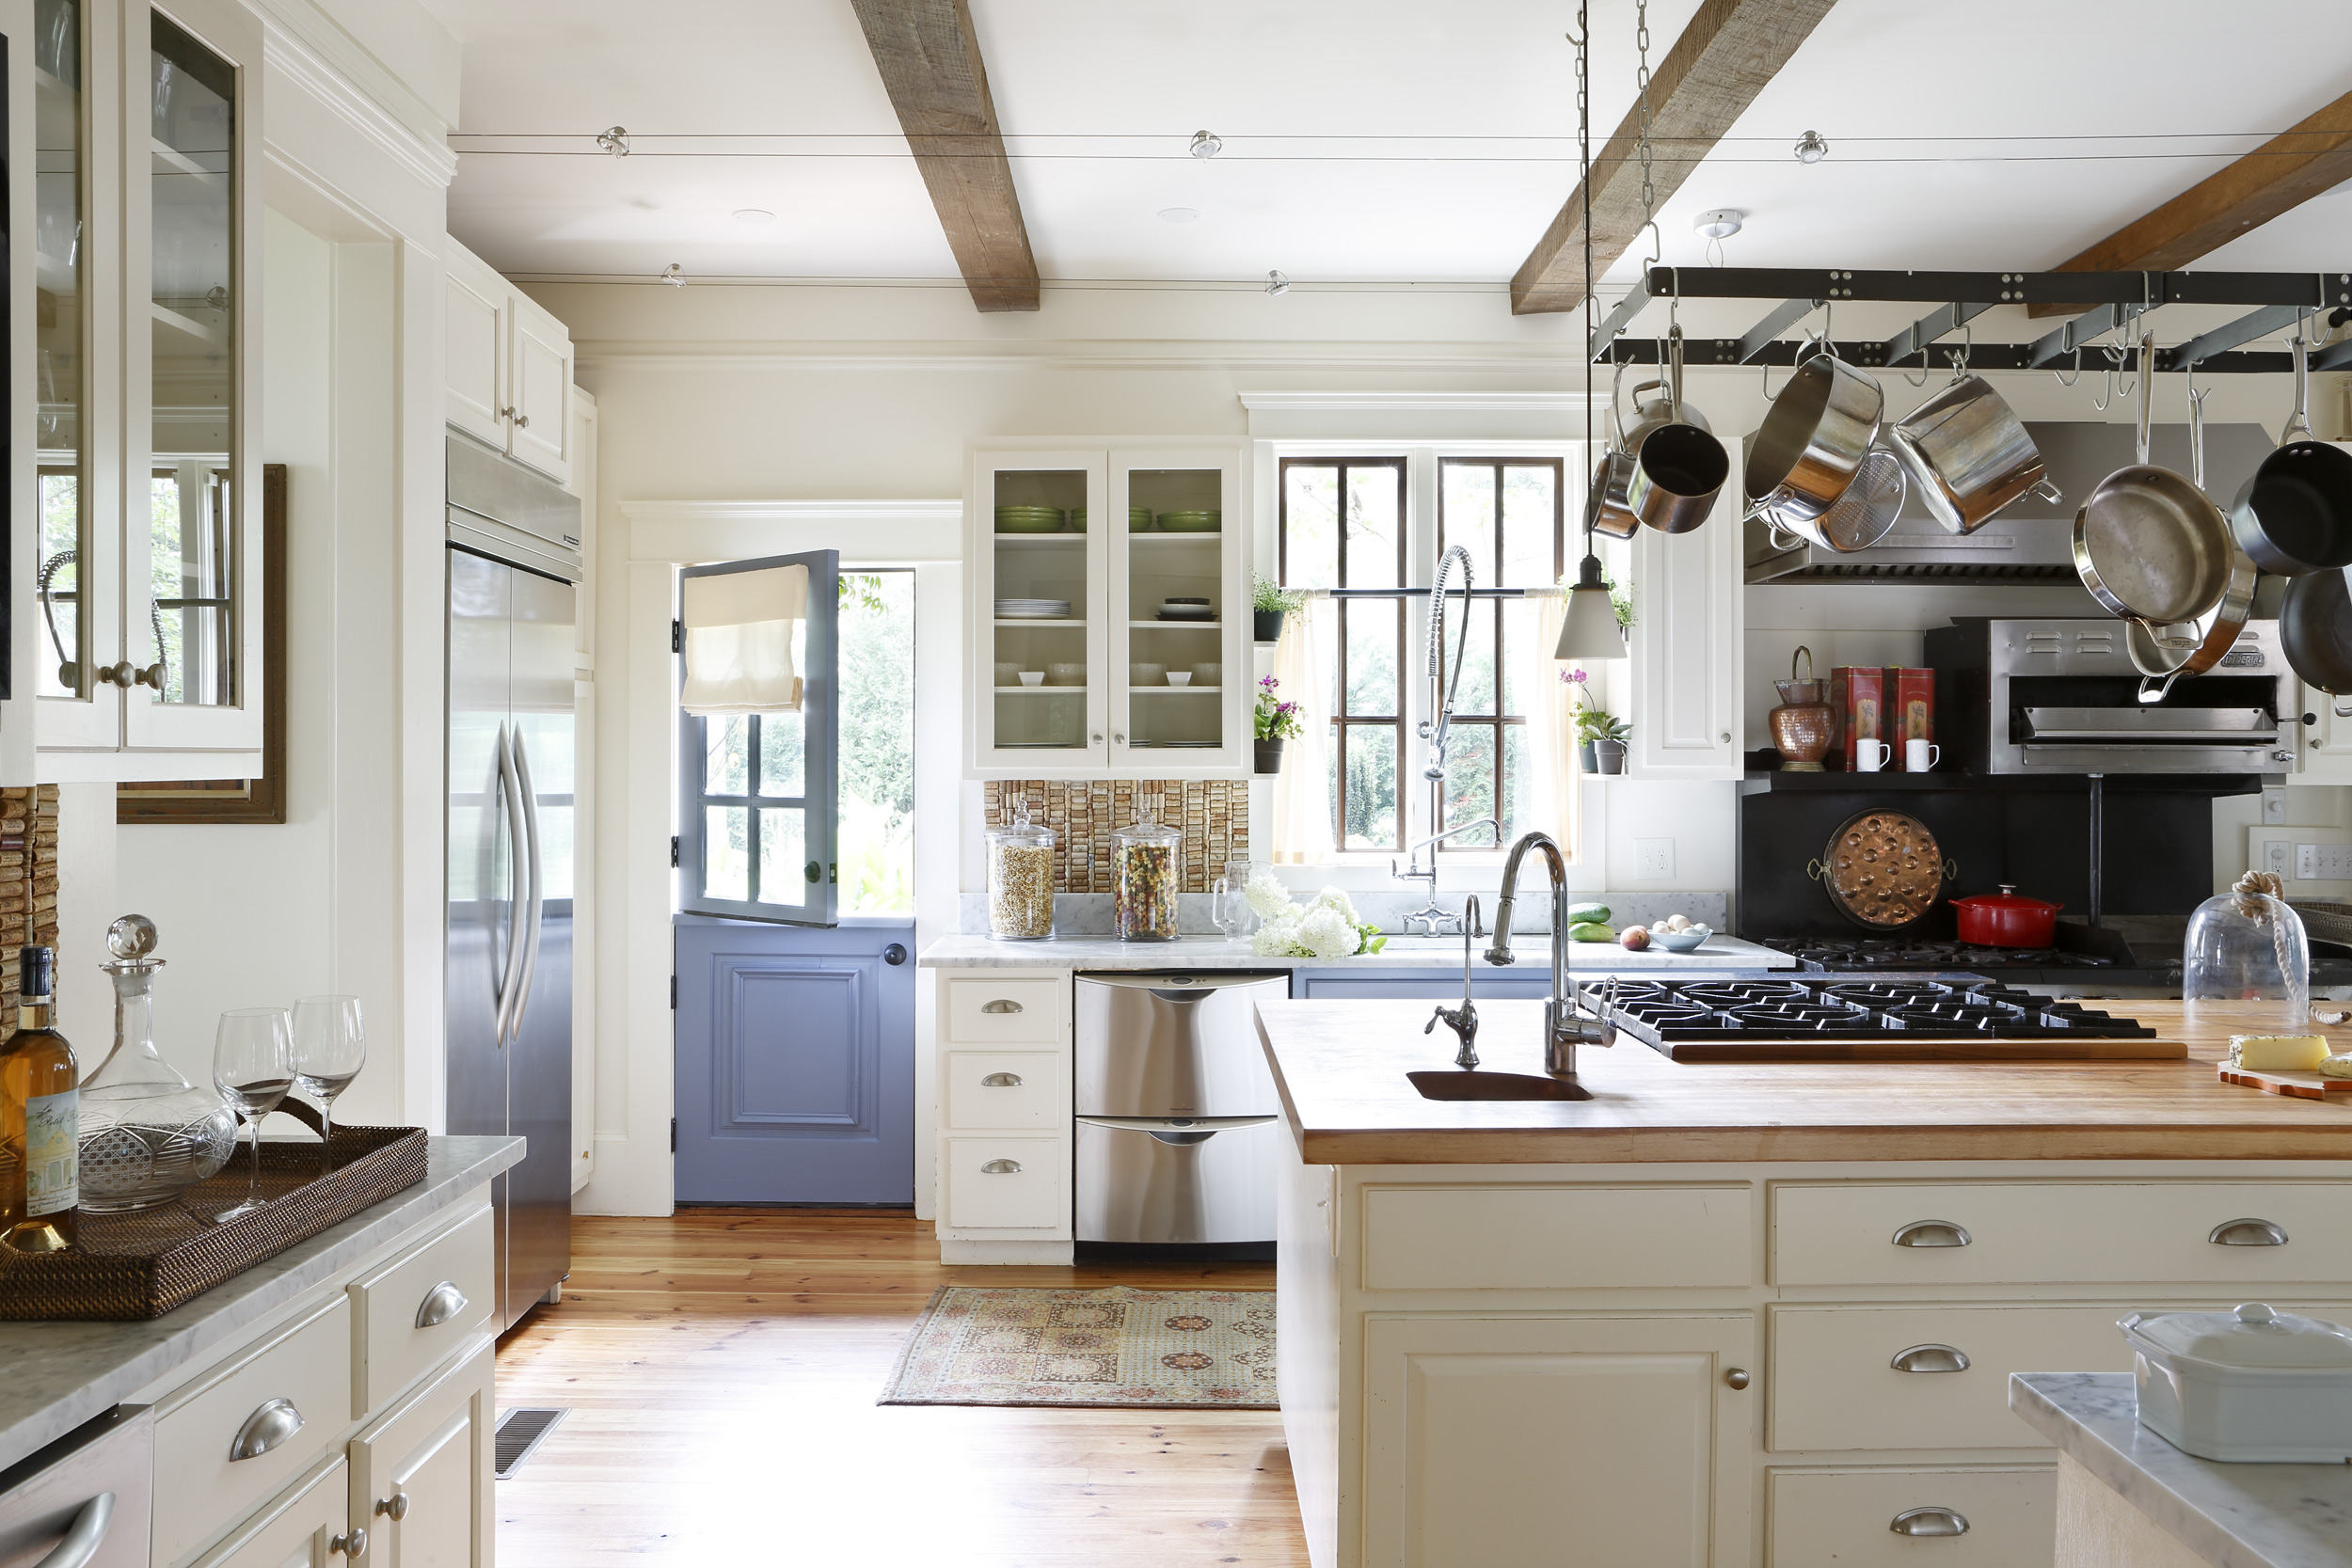 Margaret Kirkland Interiors kitchen in Grant Park, photo by Mali Azima